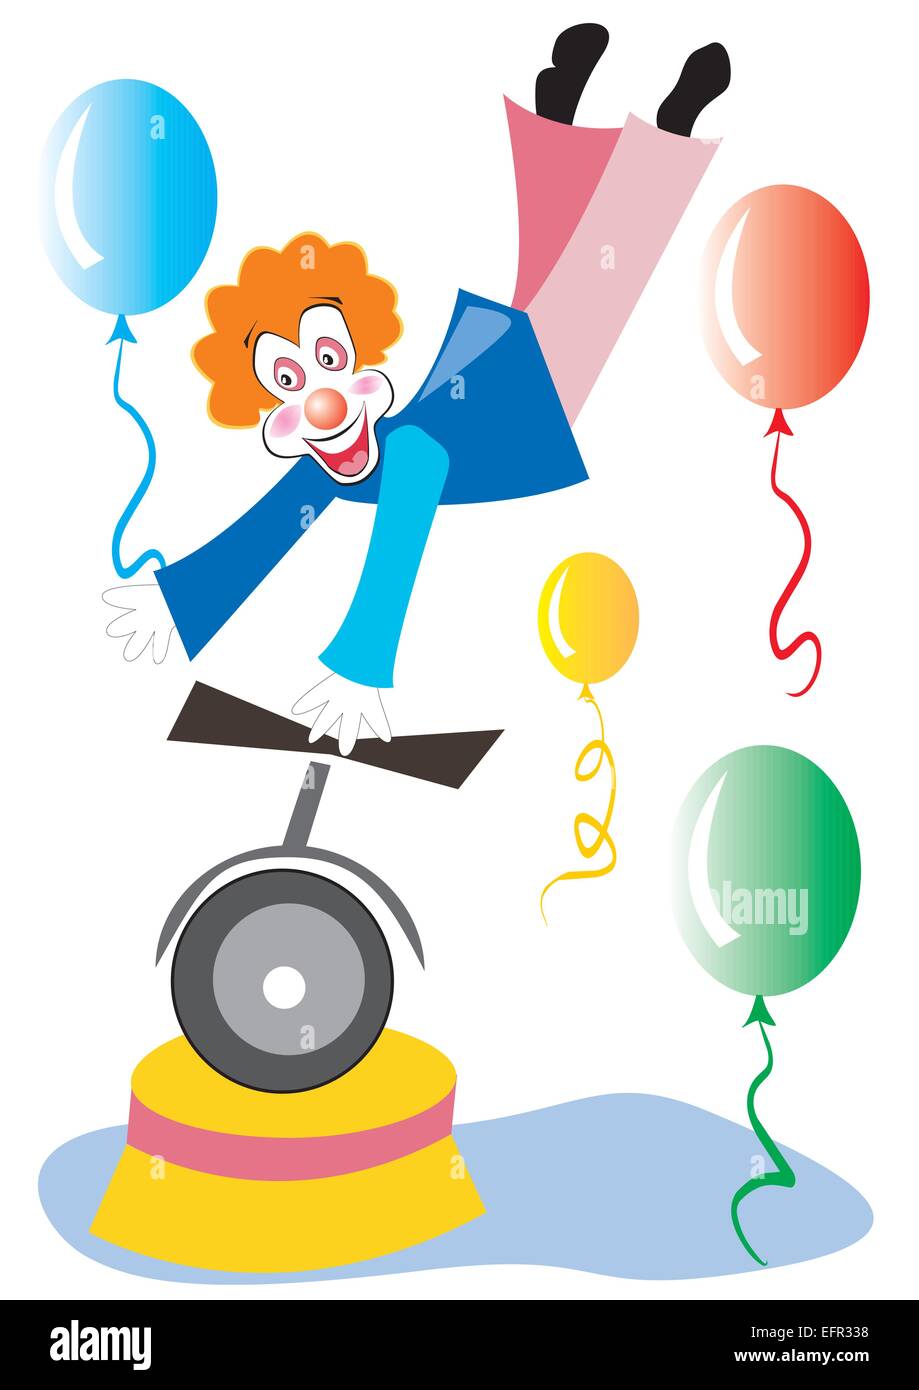 clown on unicycle holding balloon, vector illustration Stock Vector